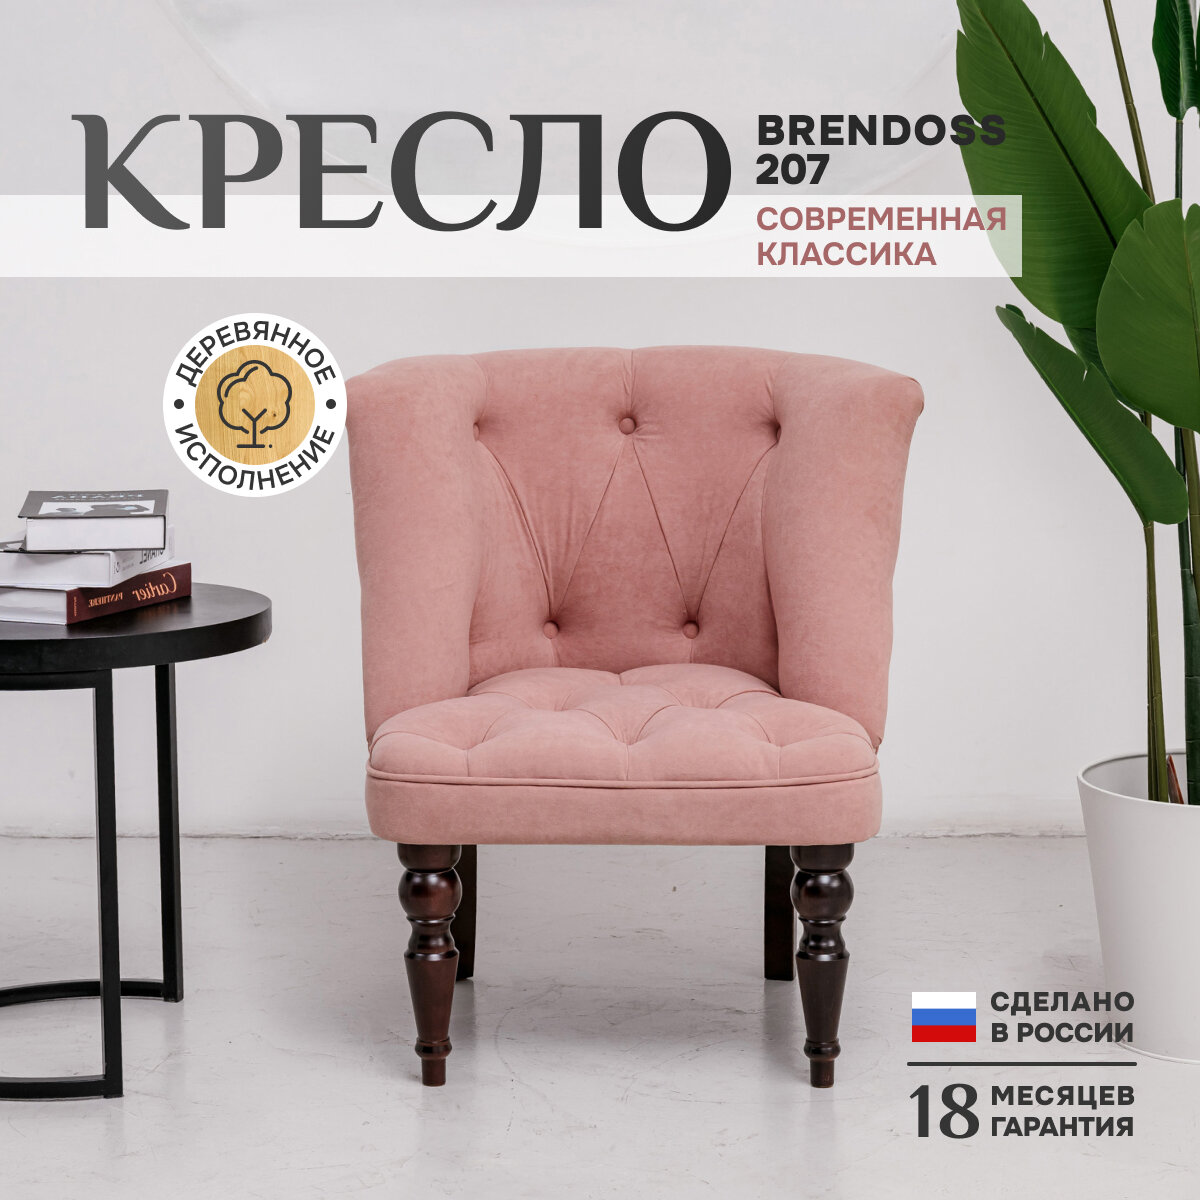 Кресло классик Brendoss 207, каретная стяжка, материал износостойкий велюр, розовый, 75х70х83 см